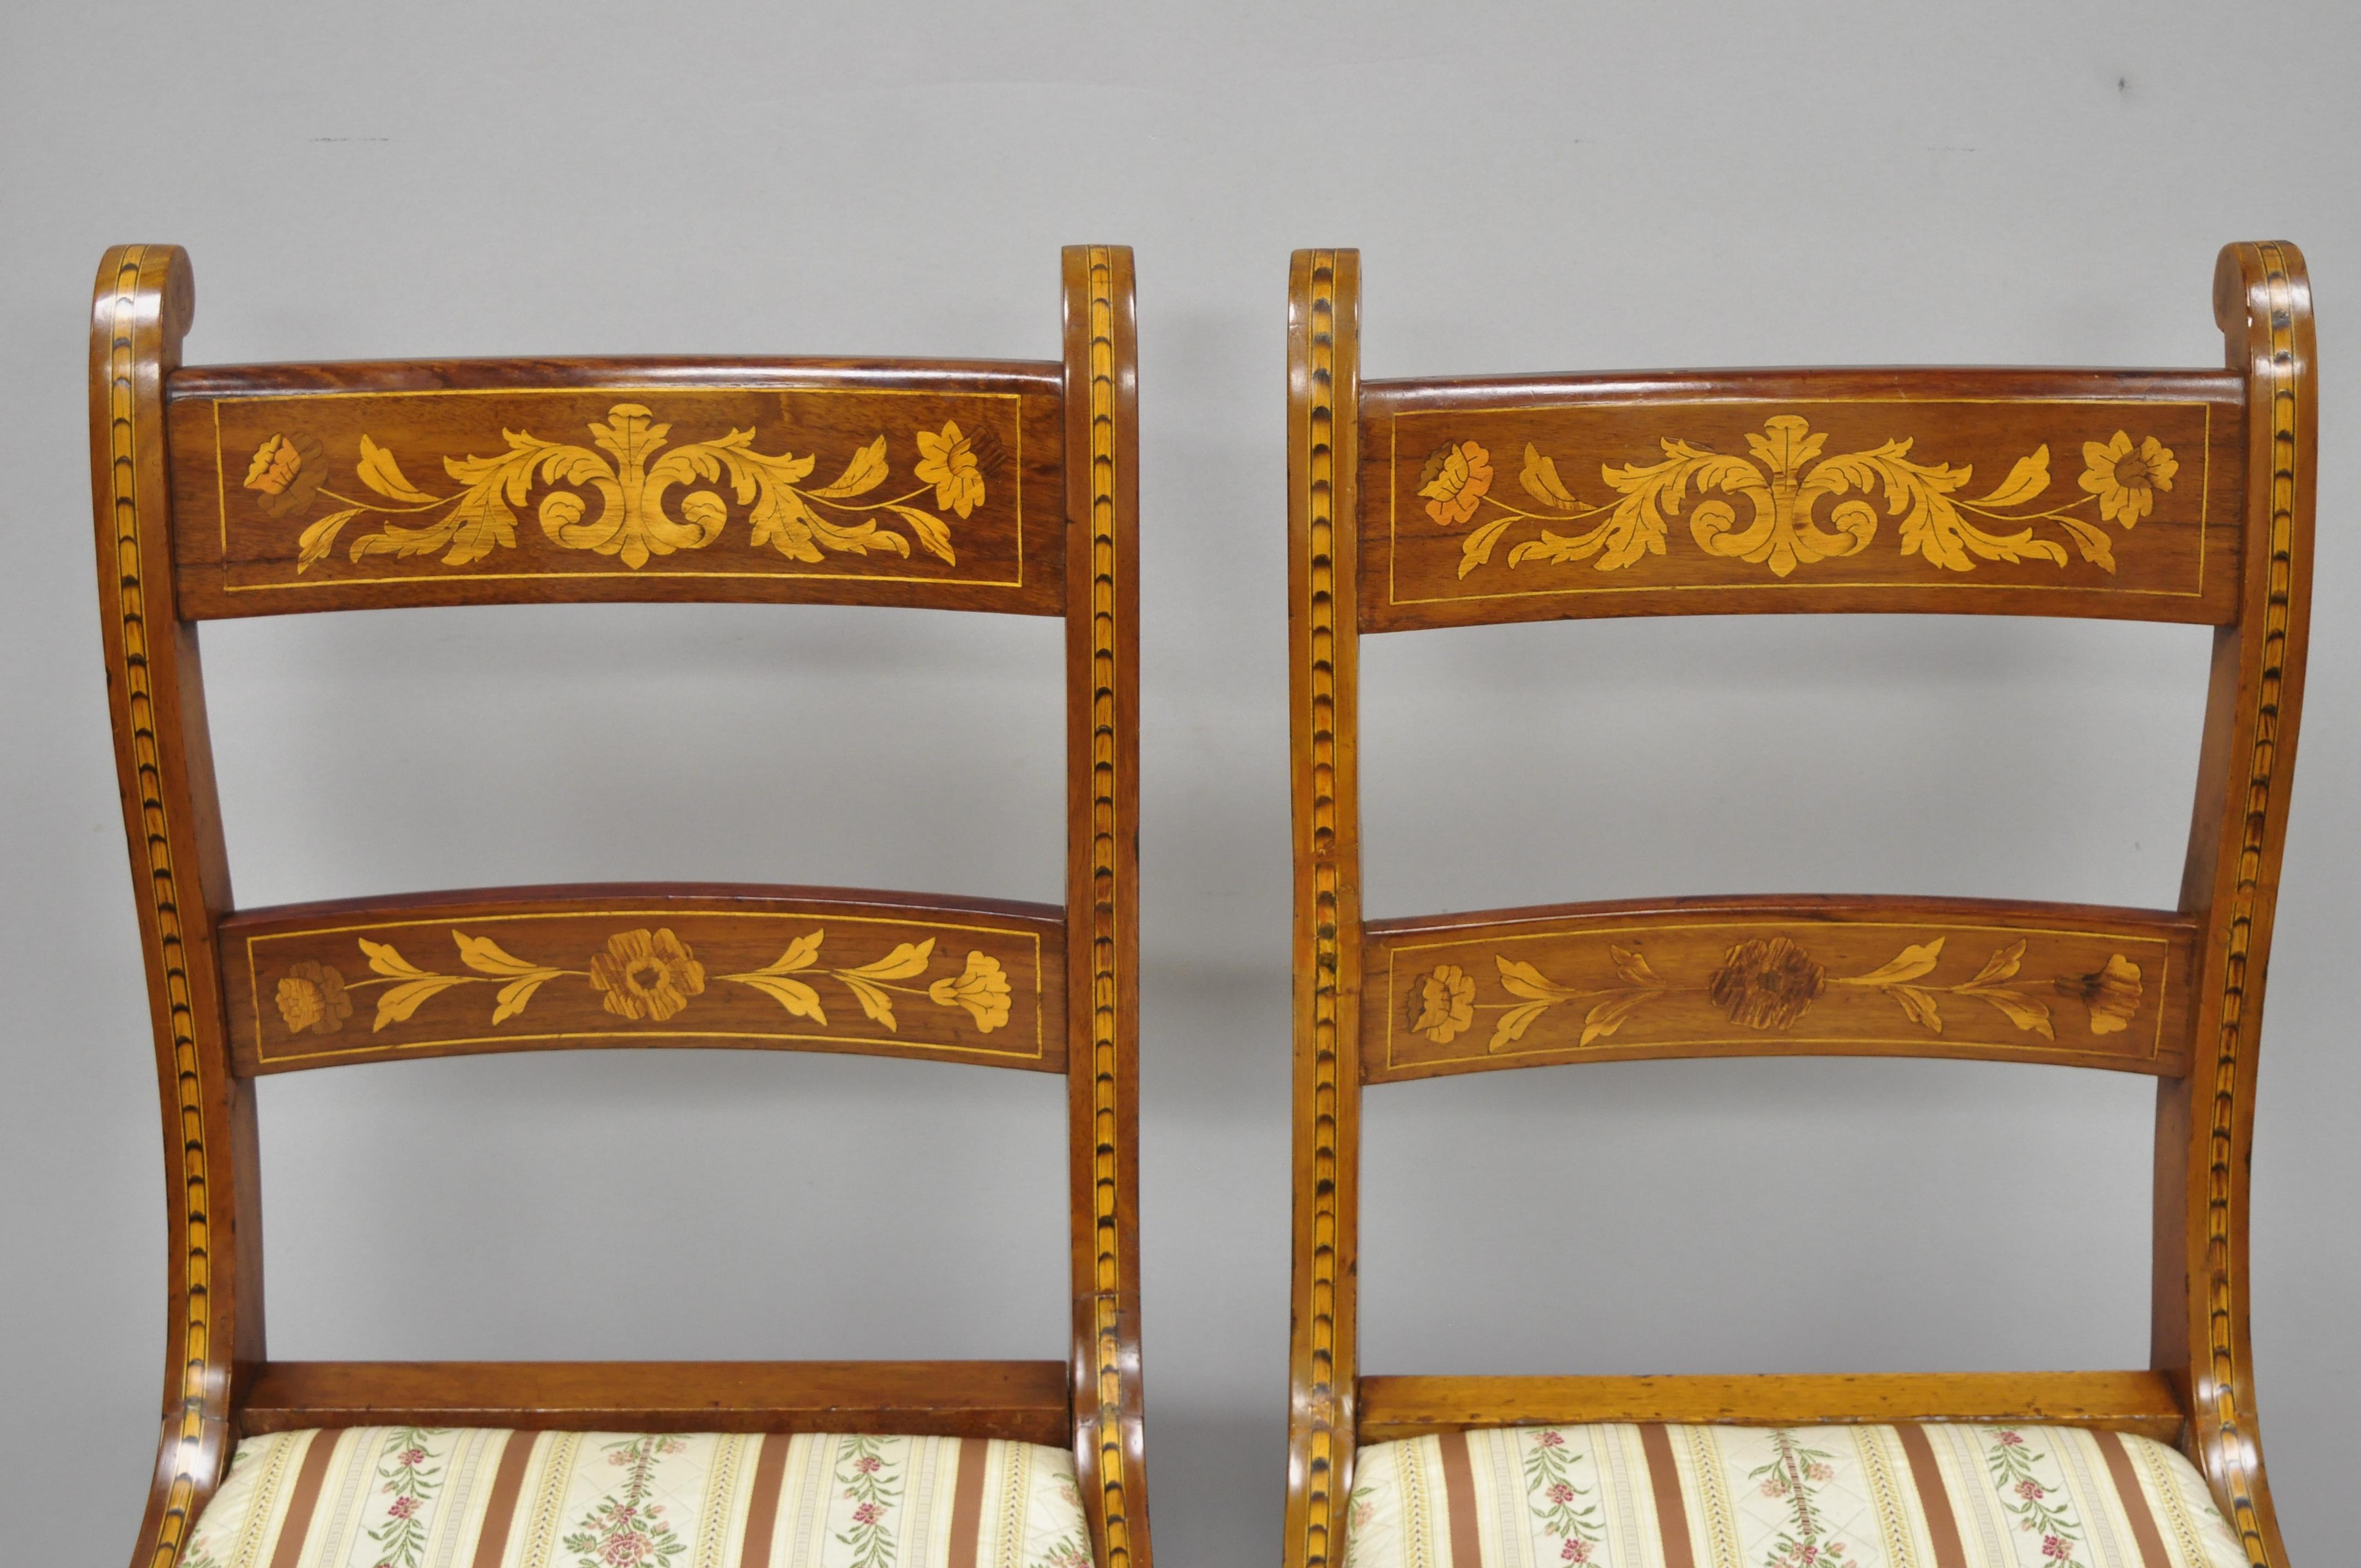 Paar Beistellstühle aus Seidenholz mit niederländischer Intarsienarbeit aus dem 19. Jahrhundert im Regency-Stil (Mahagoni)